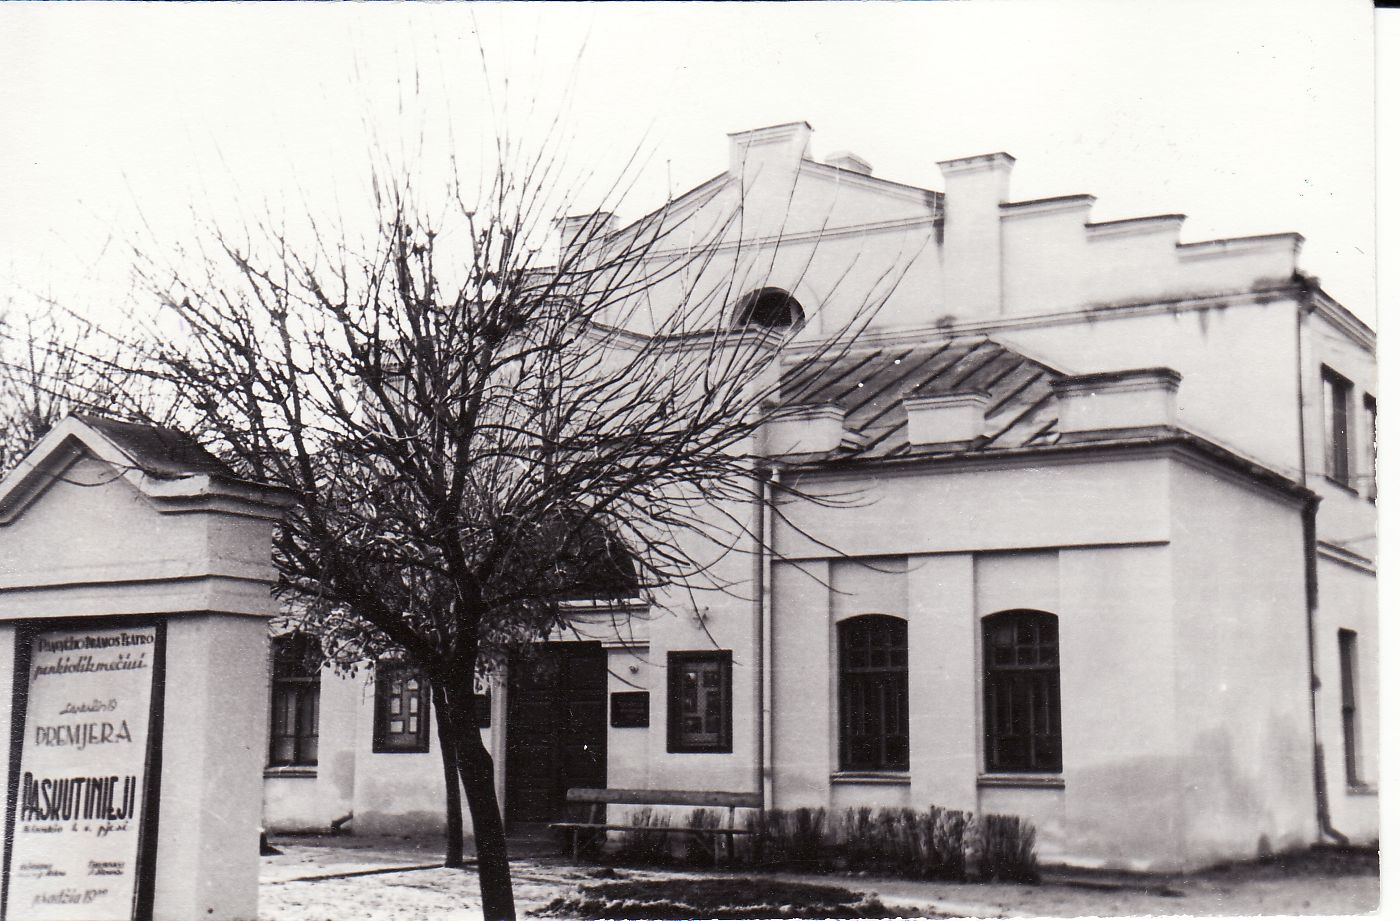 Senasis Panevėžio teatras, kokį jį 1955 metais nufotografavo aktorius ir teatro metraštininkas Kazimieras Vitkus. Iki nacionalizavimo šis pastatas priklausė Lietuvos šaulių sąjungos Panevėžio skyriui. PAVB FKV-348/14 nuotr.